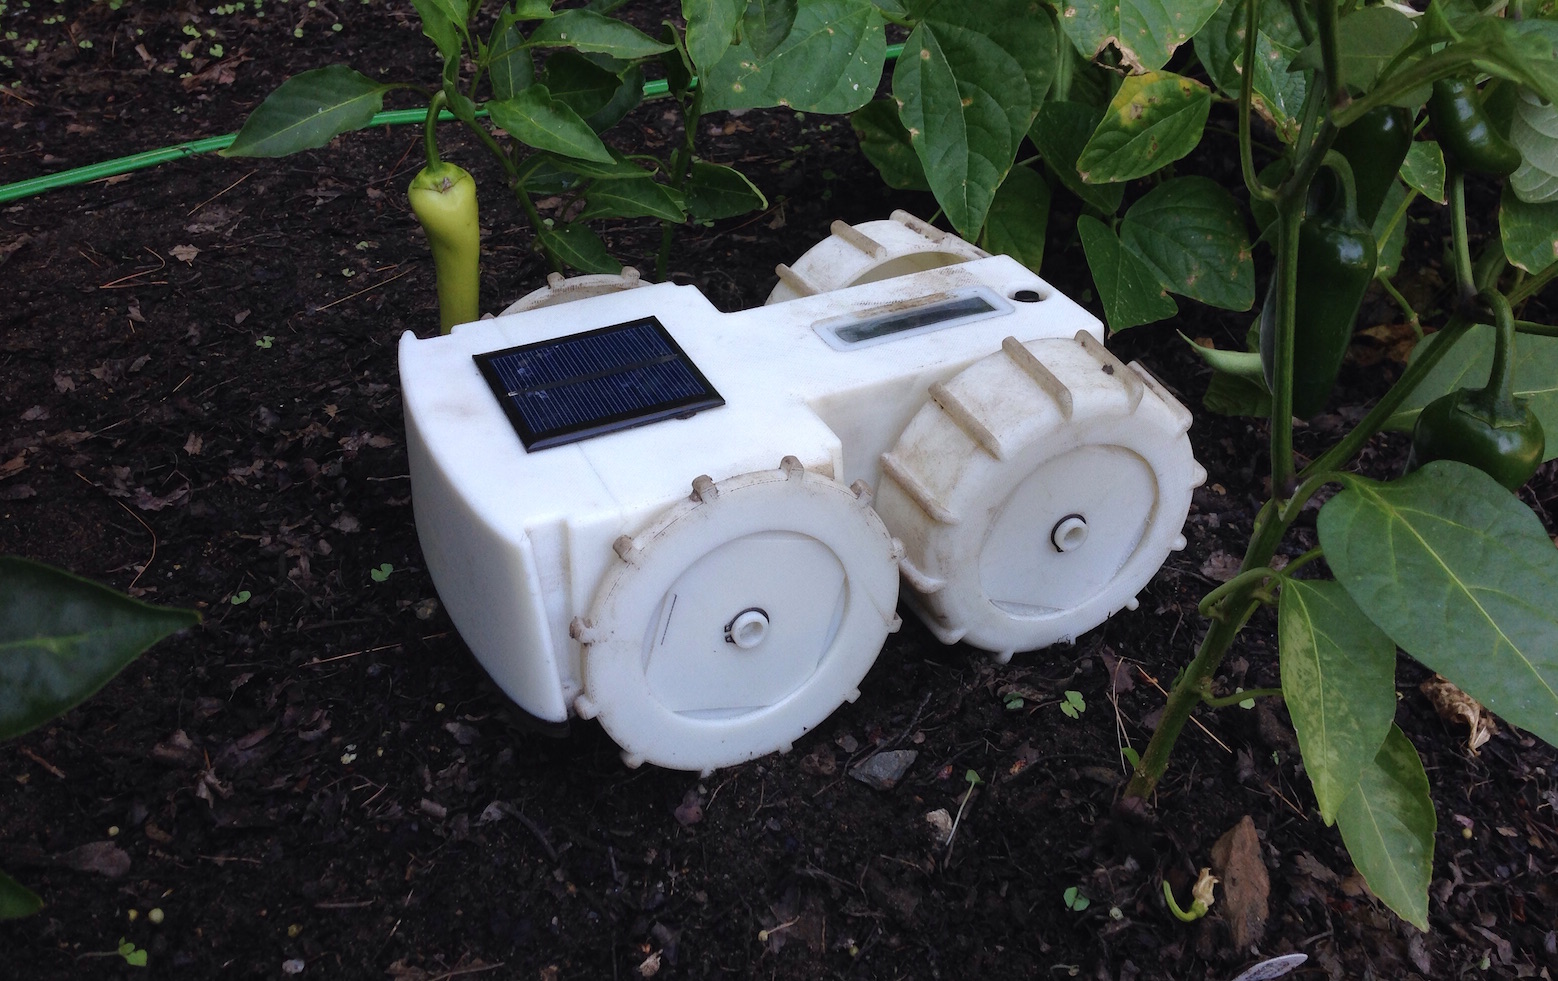 Résultat de recherche d'images pour "robot jardinier"